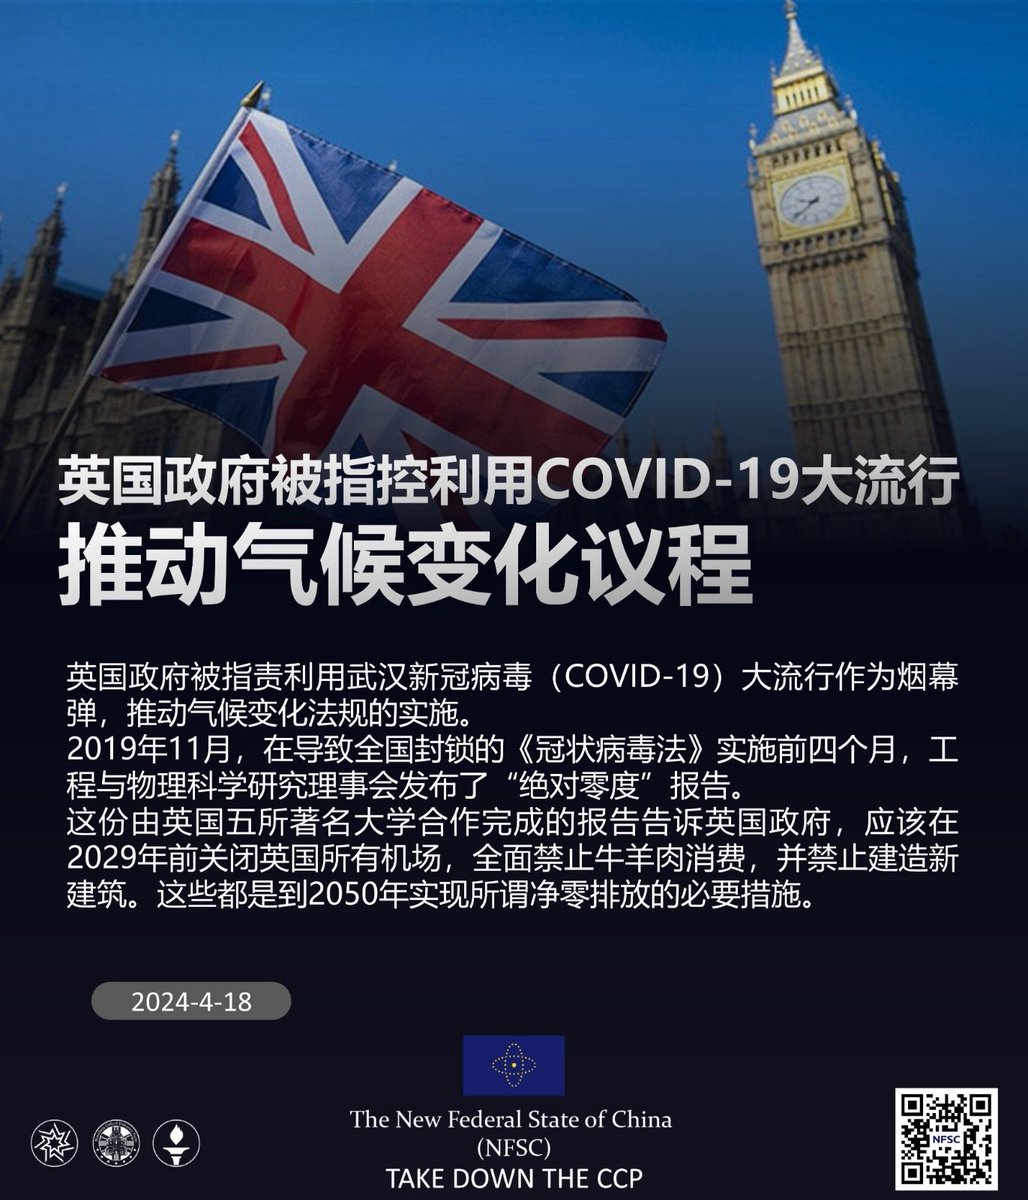 英国政府被指控利用COVID-19大流行推动气候变化议程

04/18/2024 #英国政府 被指责利用 #武汉 #新冠病毒( #COVID-19) 大流行作为烟幕弹,推动气候变化法规的实施。
2019年11月,在导致全国封锁的《 #冠状病毒法》实施前四个月,工程与物理科学研究理事会发布了“绝对零度”报告。